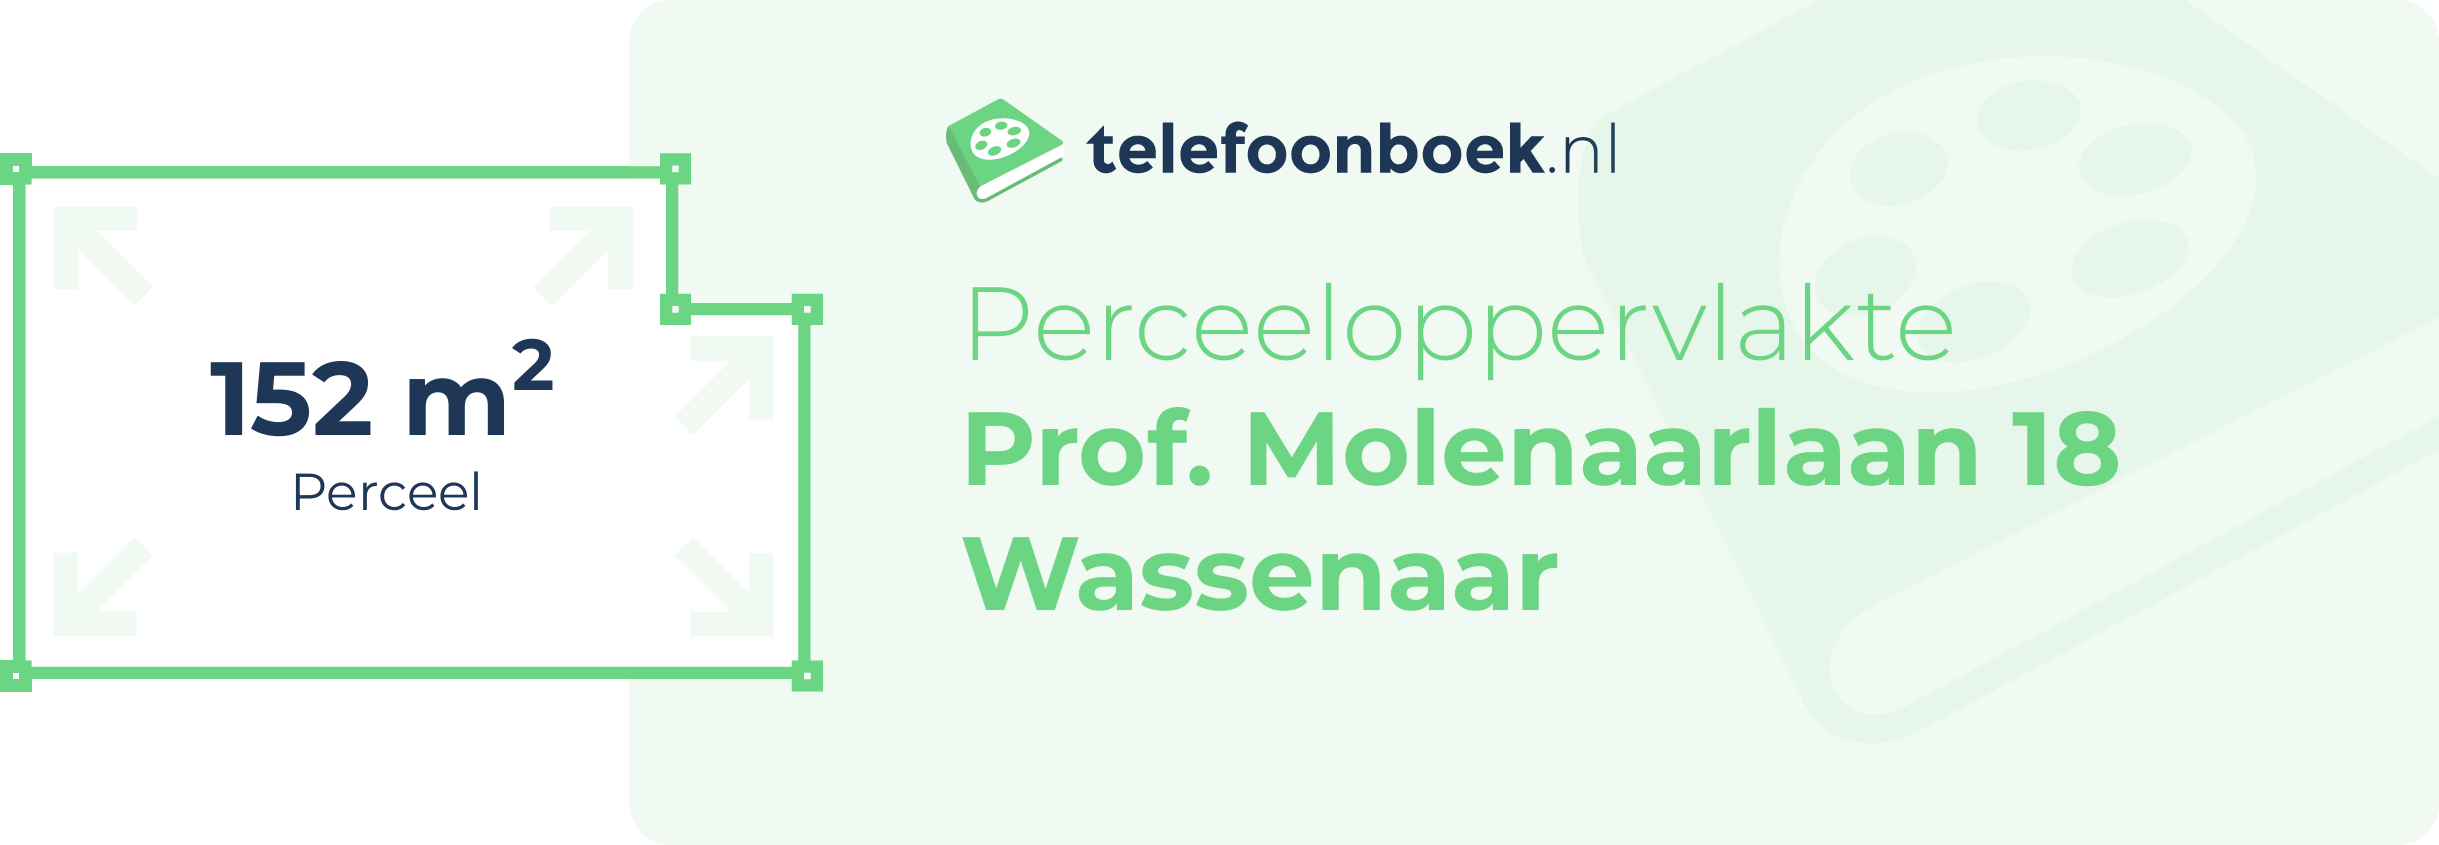 Perceeloppervlakte Prof. Molenaarlaan 18 Wassenaar